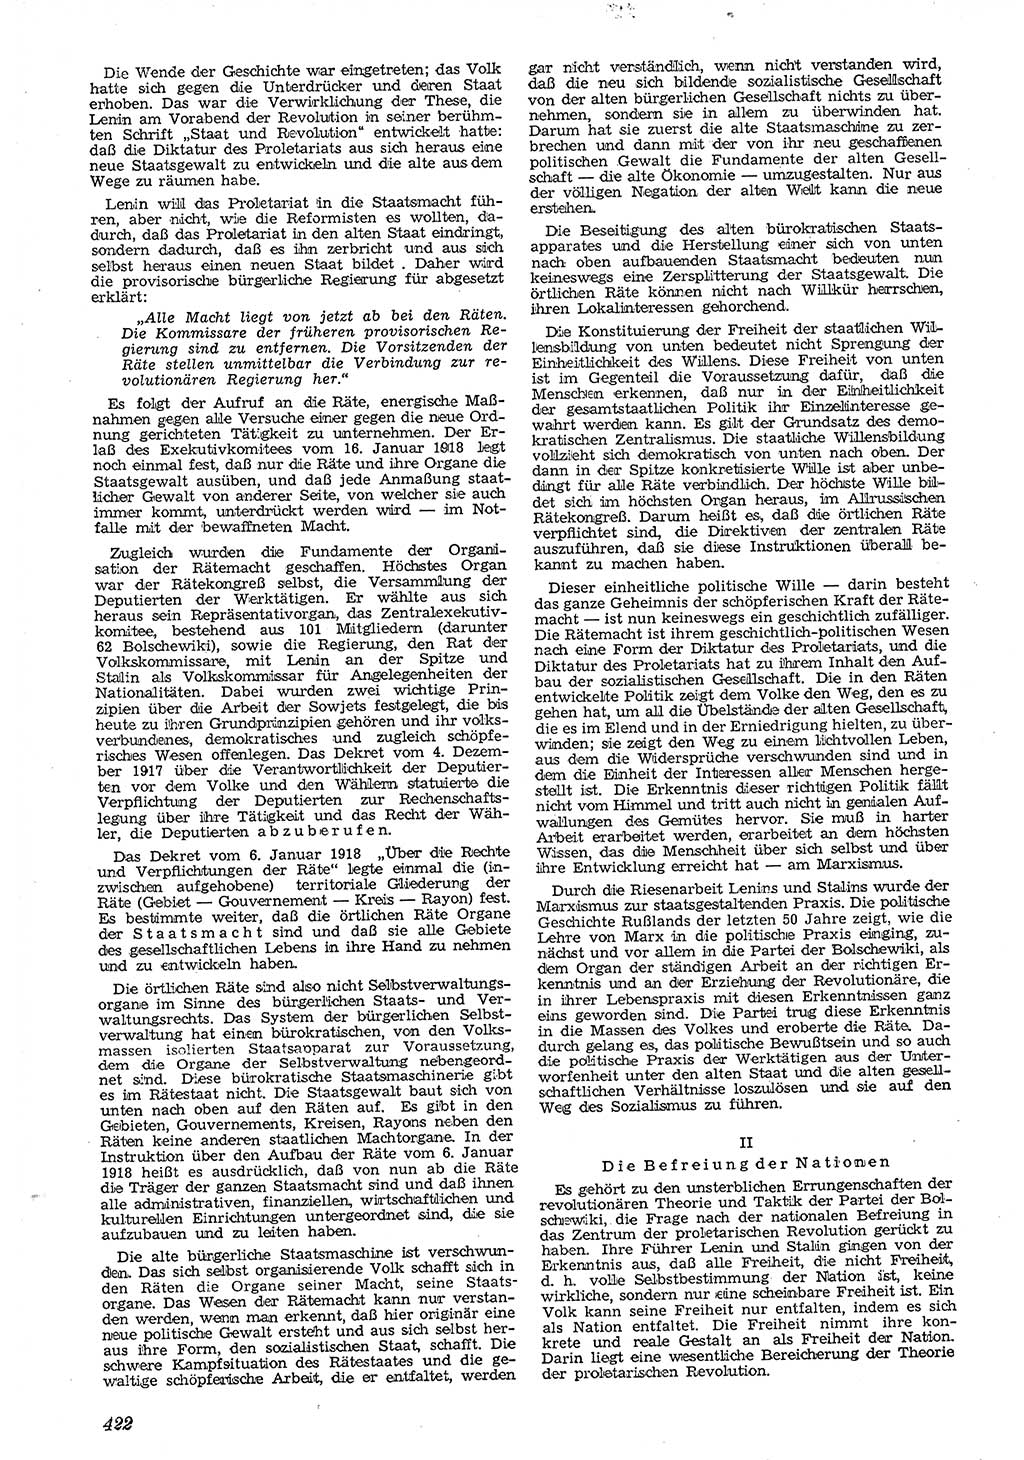 Neue Justiz (NJ), Zeitschrift für Recht und Rechtswissenschaft [Deutsche Demokratische Republik (DDR)], 4. Jahrgang 1950, Seite 422 (NJ DDR 1950, S. 422)